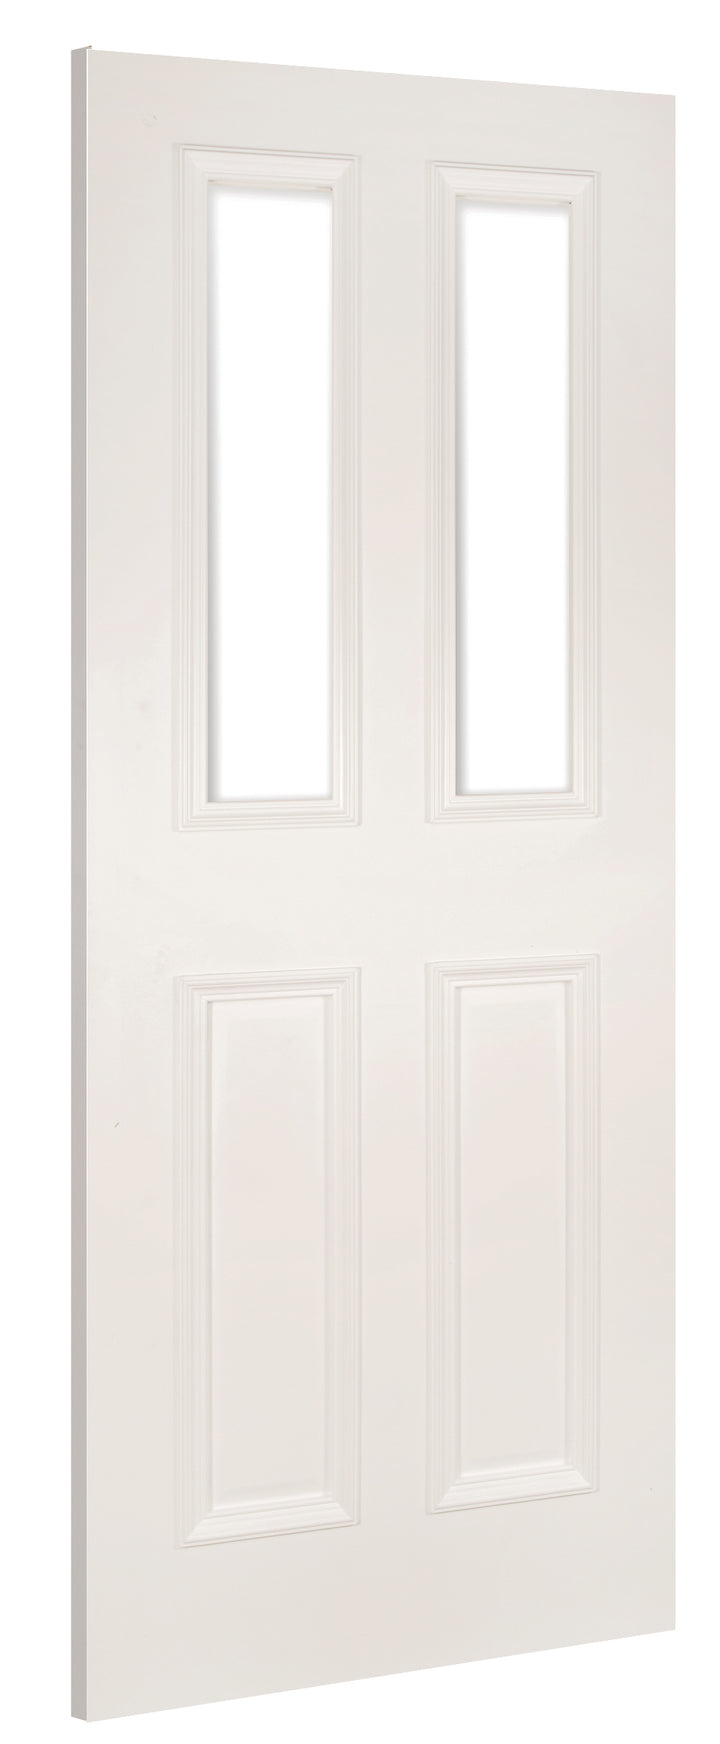 Deanta WR1G White Primed Door - Glass